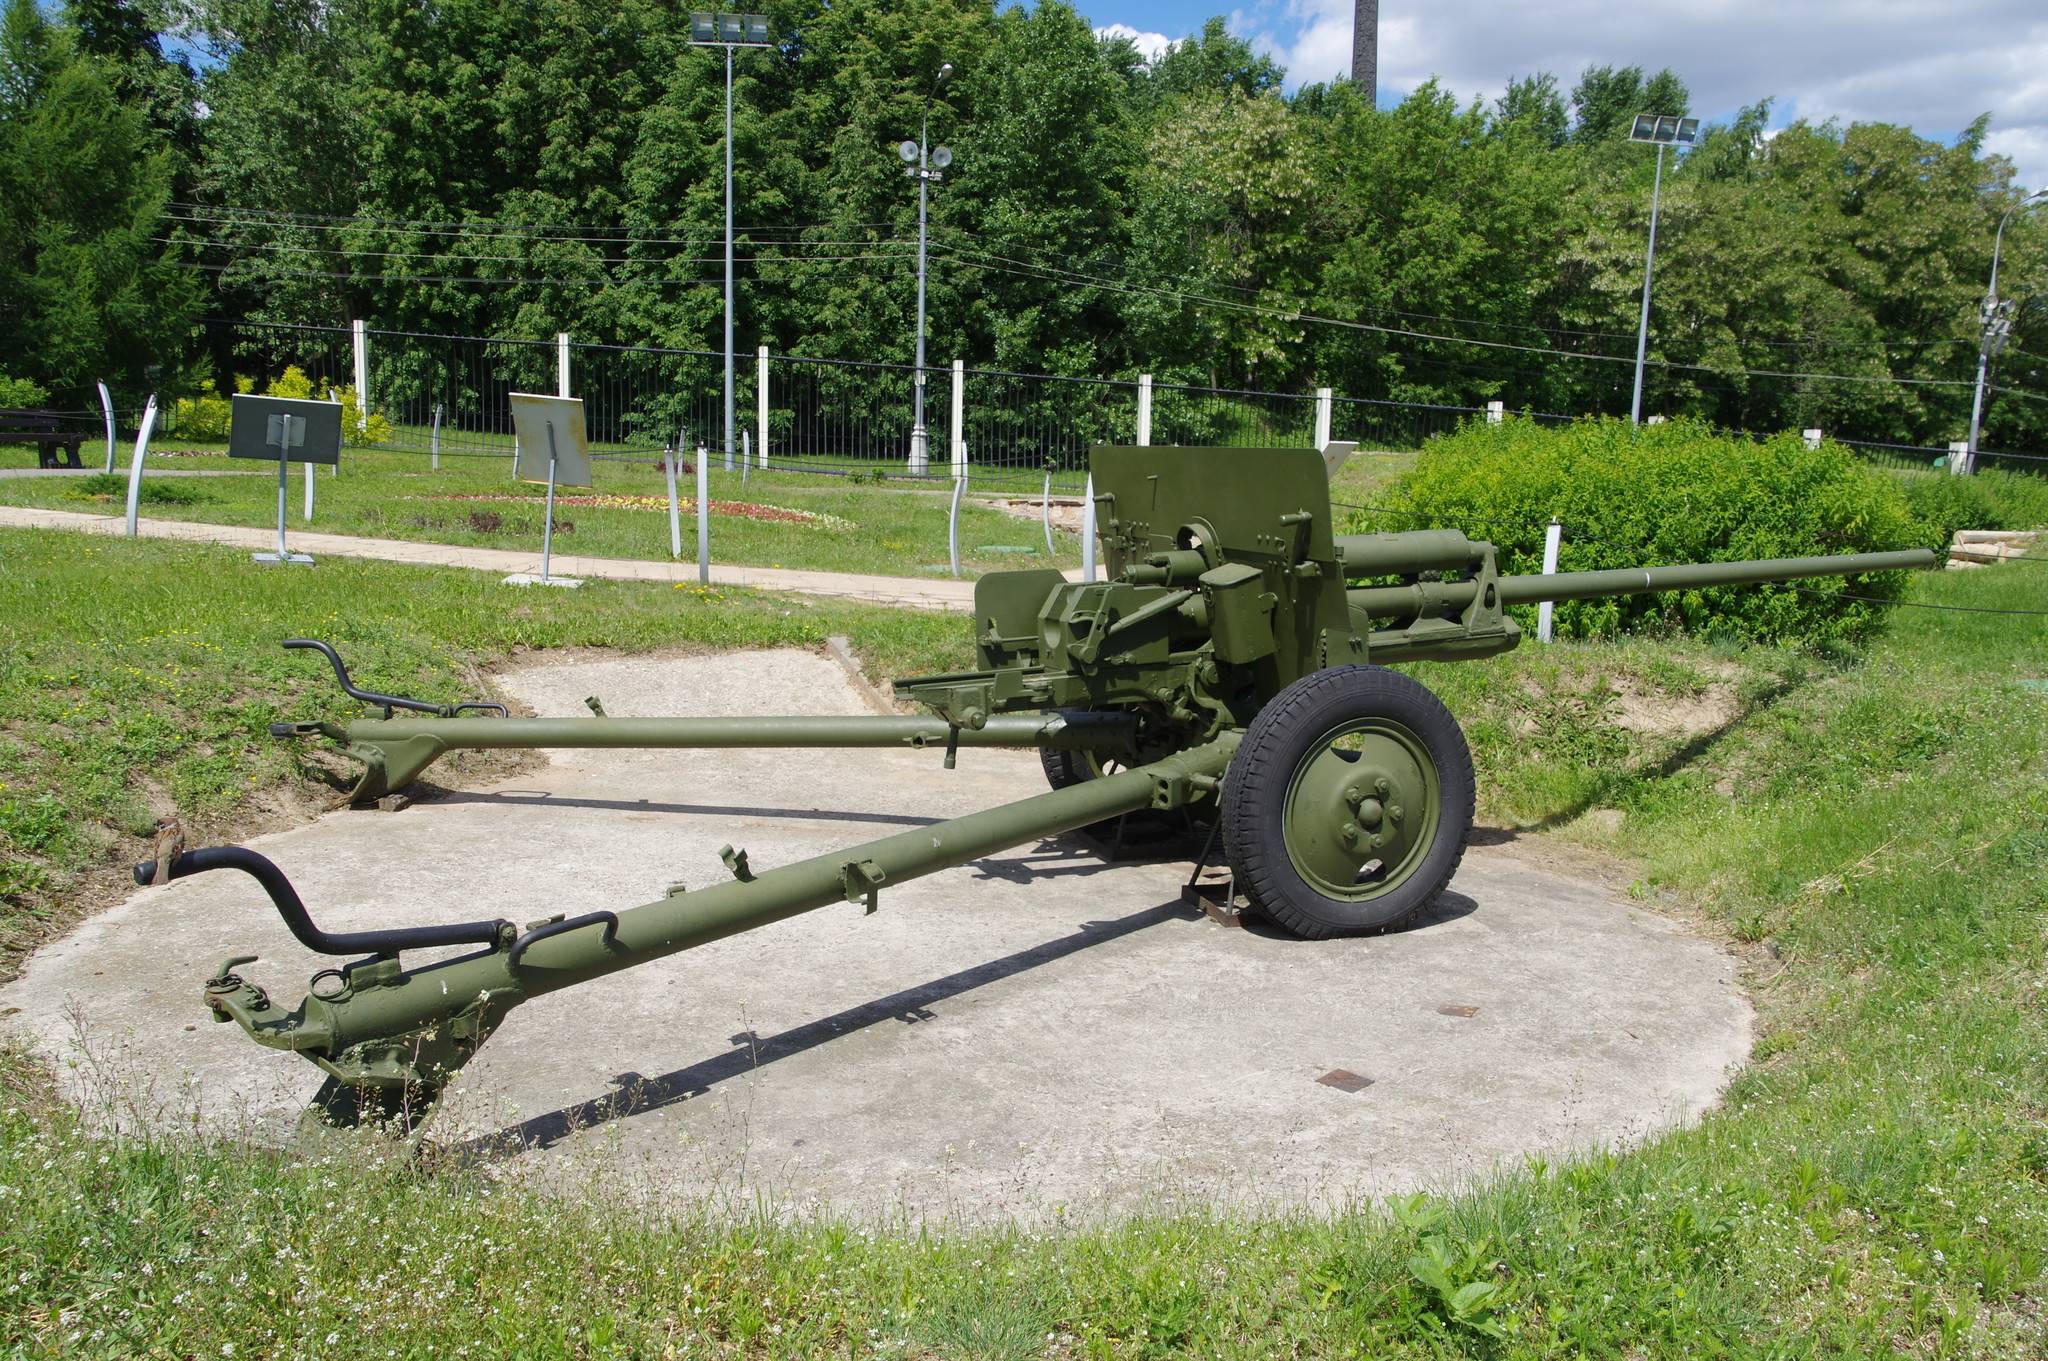 Зис-2: 57 мм пушка, противотанковая, тактико-технические характеристики, боевое применение, история создания